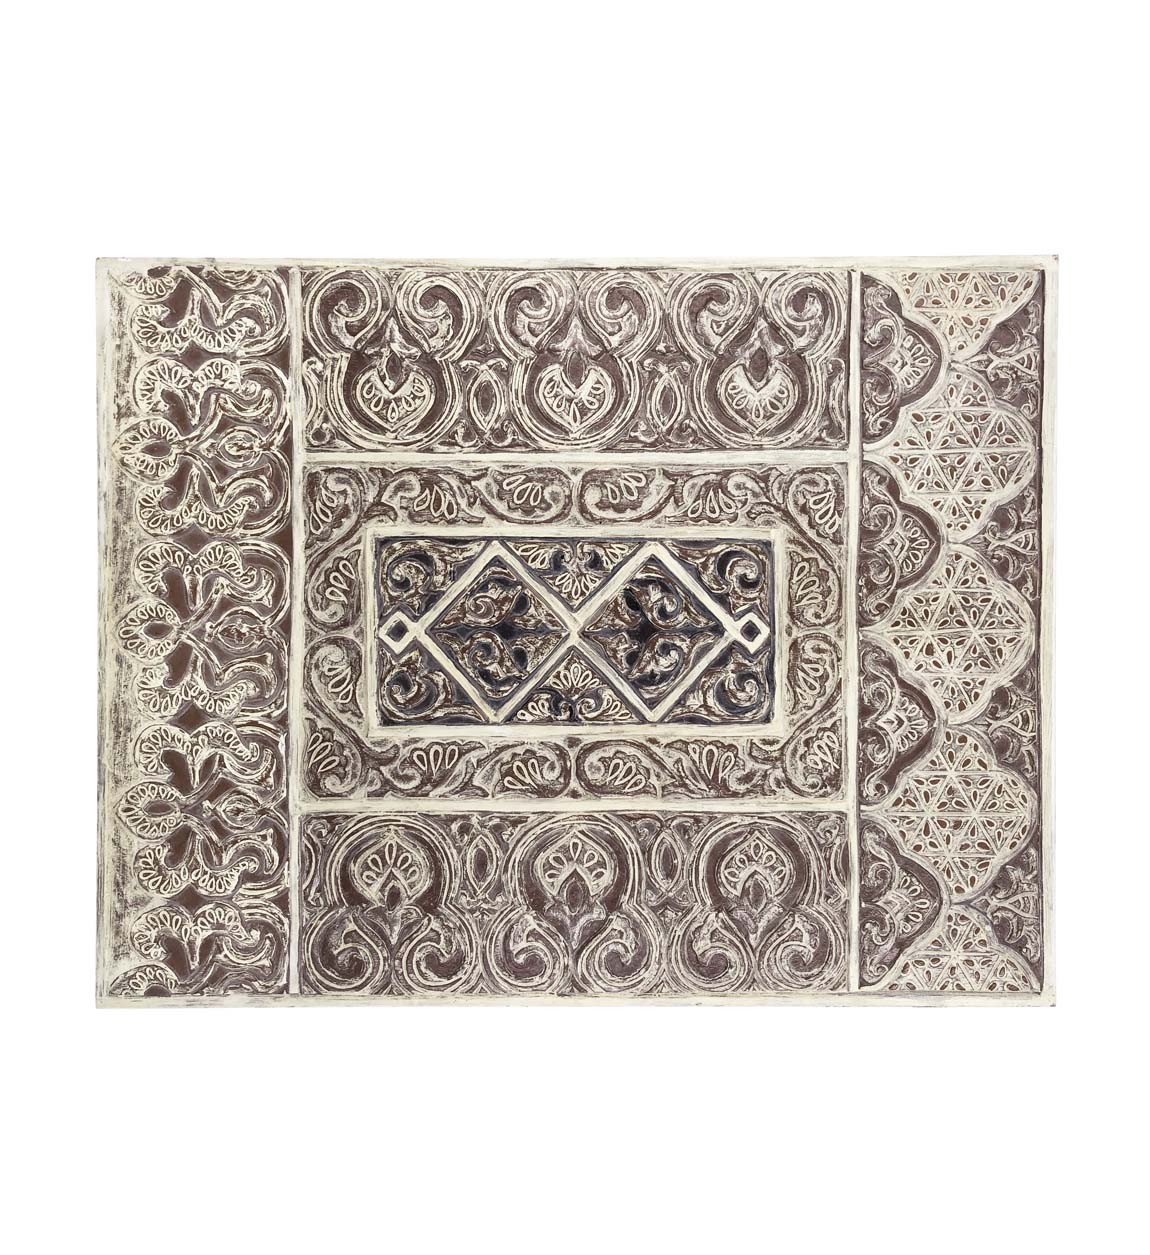 Estila Dekorační nástěnný panel Moletto obdélníkového tvaru ve stylu etno ve světlých hnědých odstínech 90cm